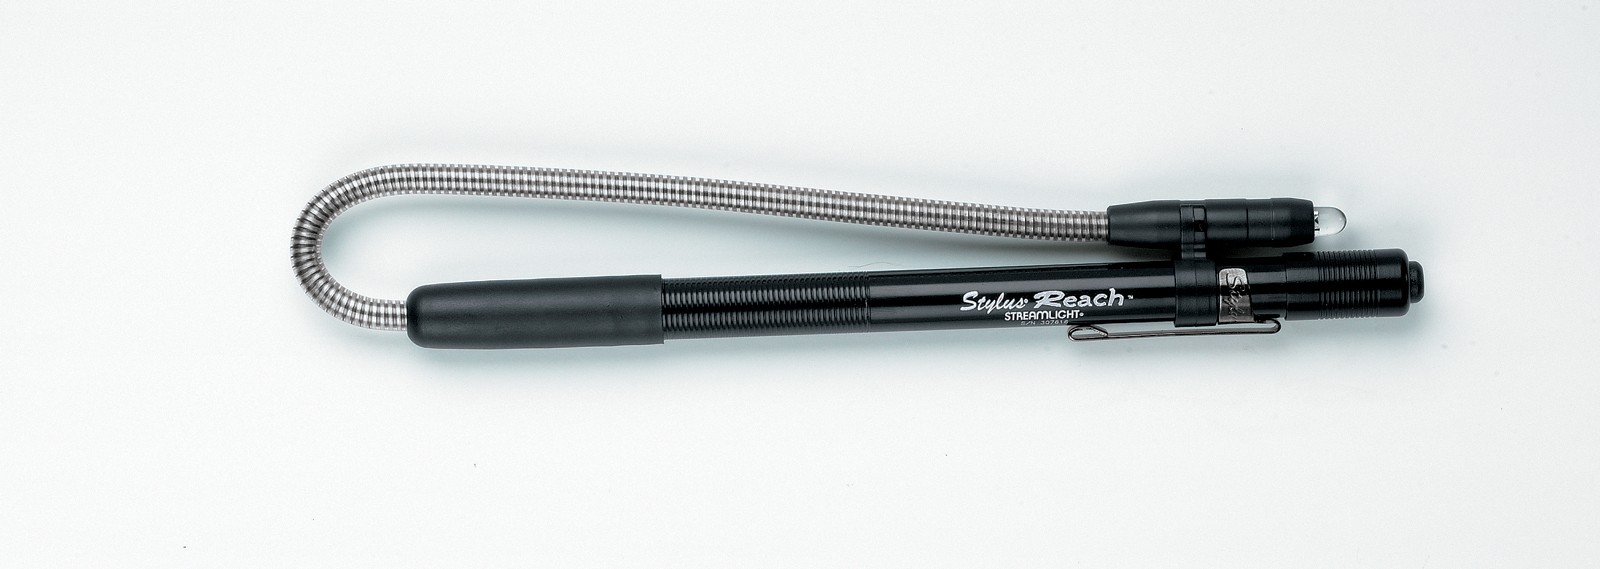 Взрывобезопасный фонарь в виде ручки Stylus® Reach Фото 3